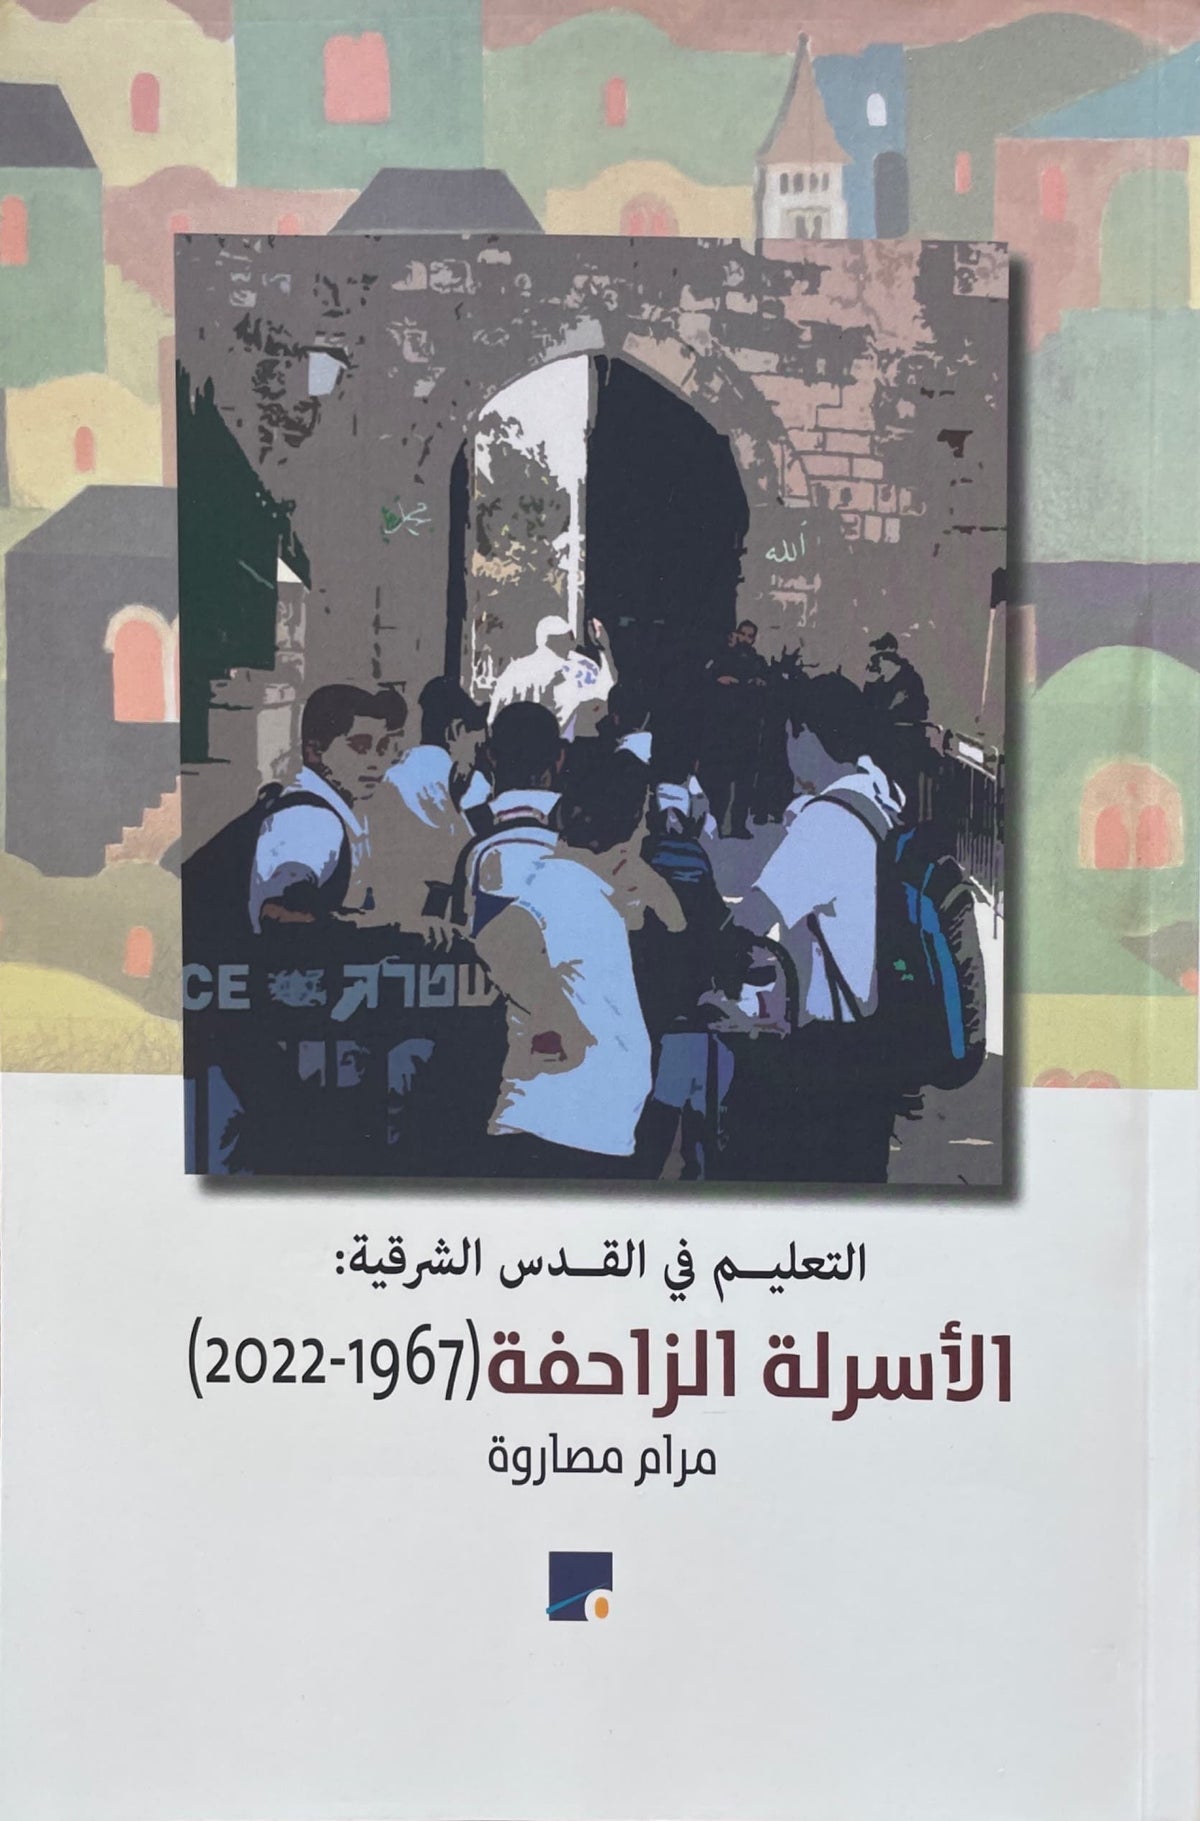 التعليم في القدس الشرقية : الأسرلة الزاحفة 1967-2022